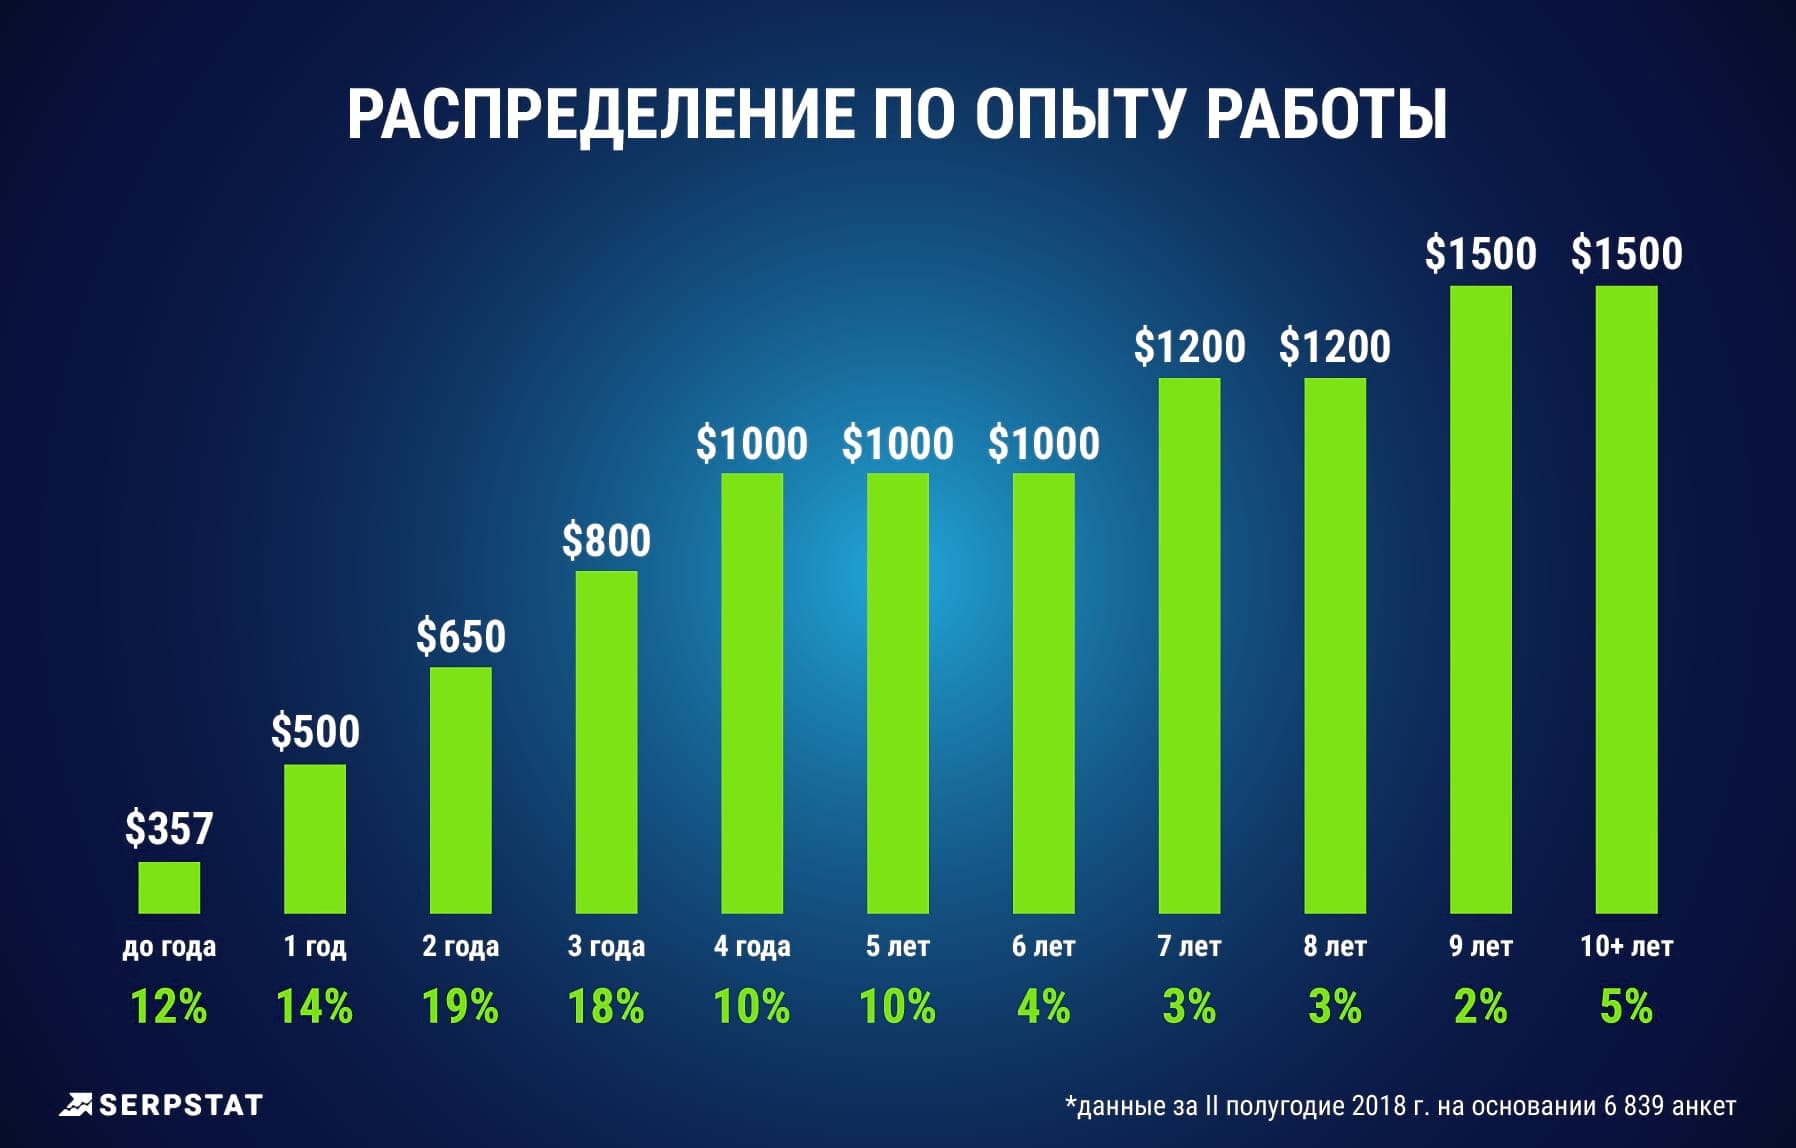 Сколько зарабатывают интернет-маркетологи: новый международный рейтинг  зарплат от Serpstat. Читайте на Cossa.ru